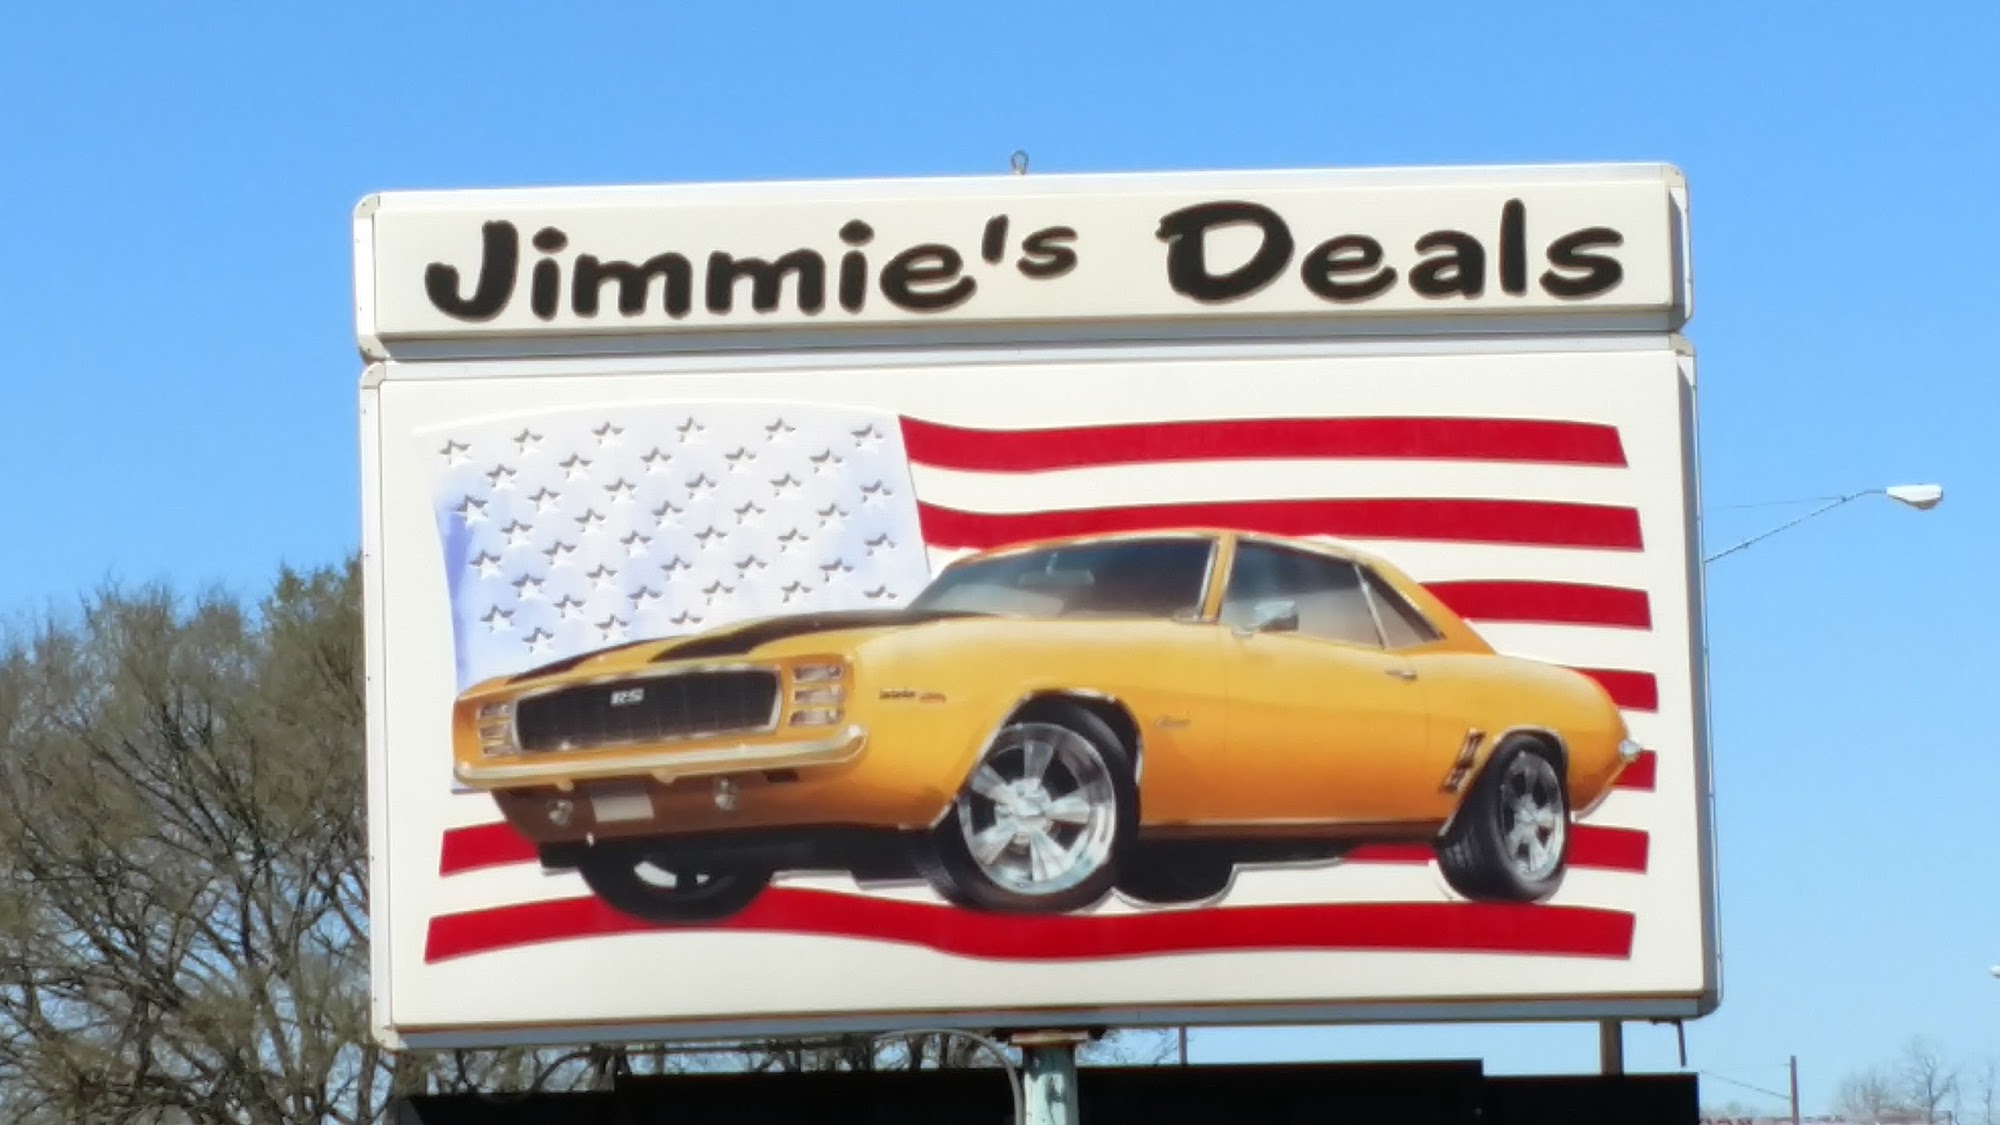 Jimmie's Deals